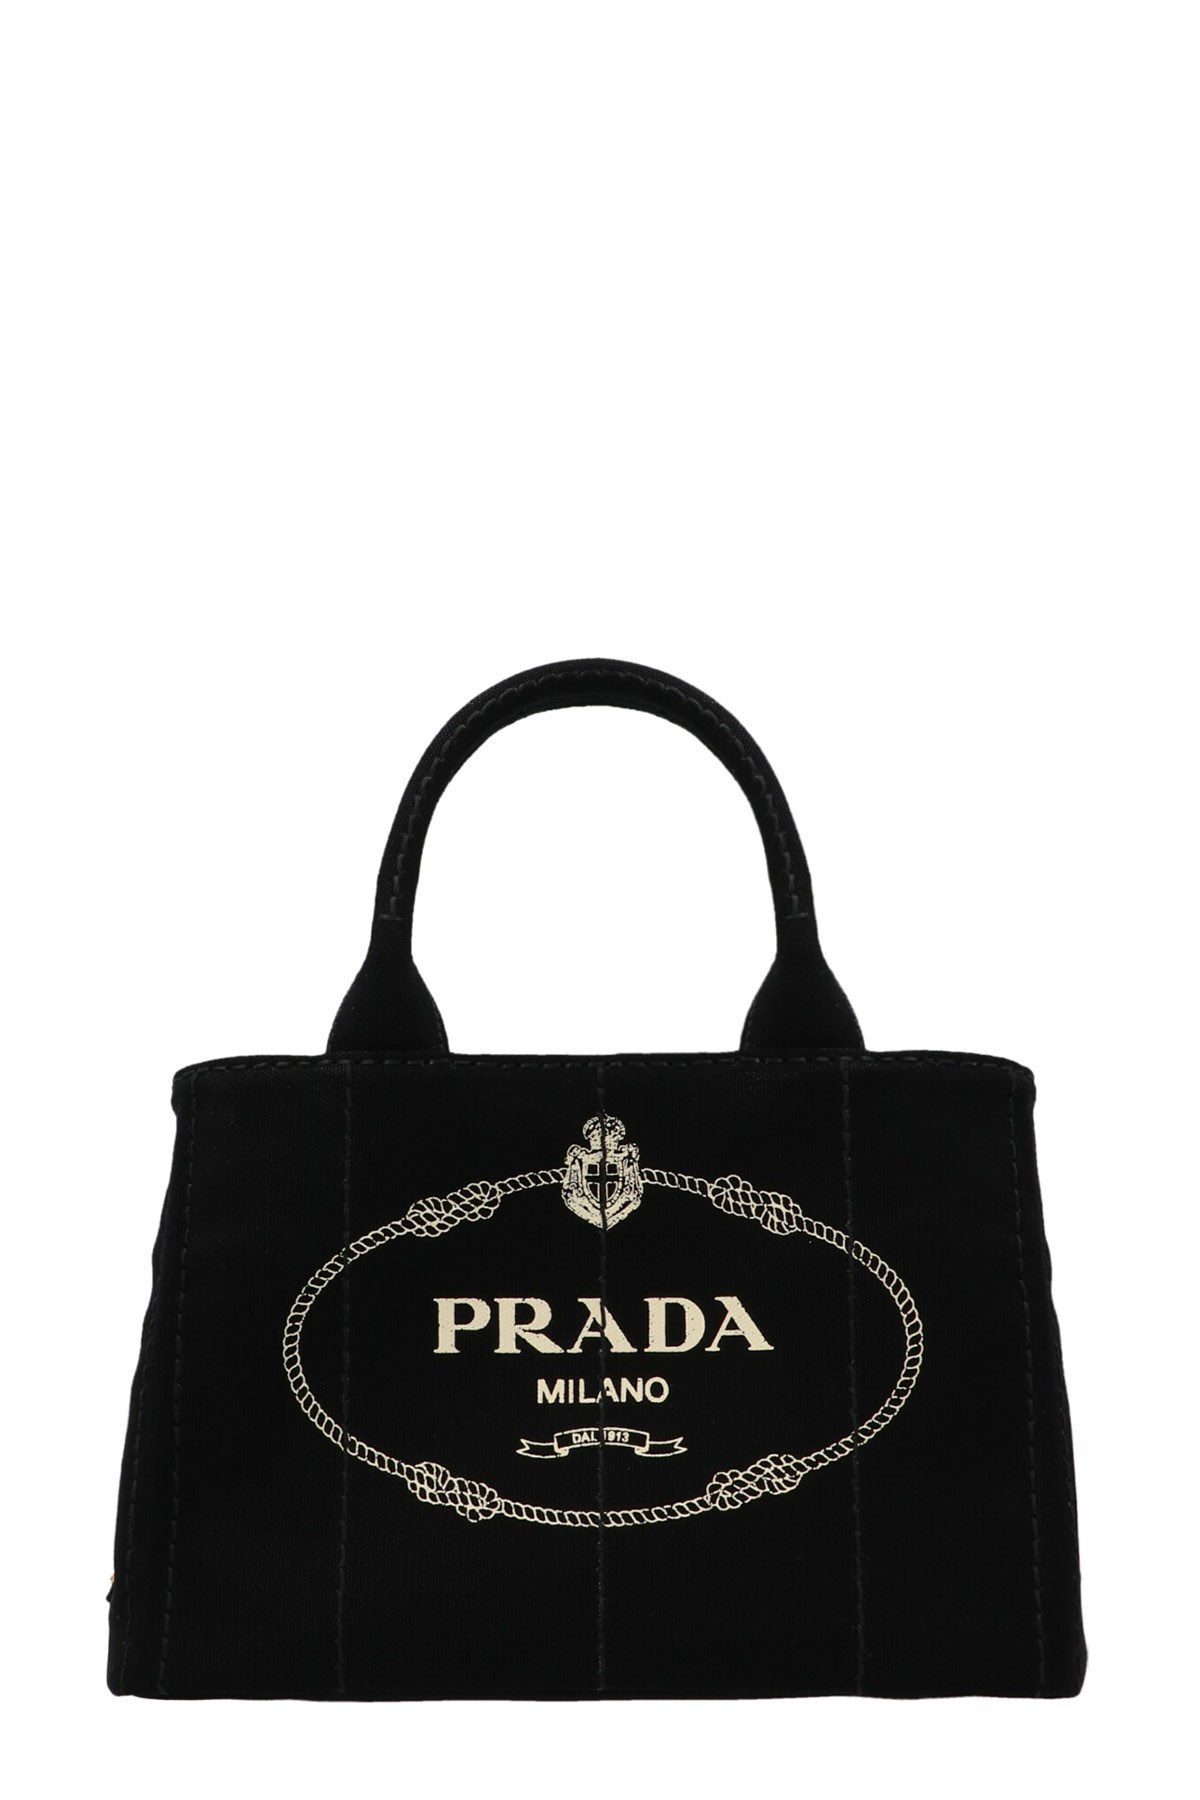 PRADA 'Giardiniera' Small Shopping Bag